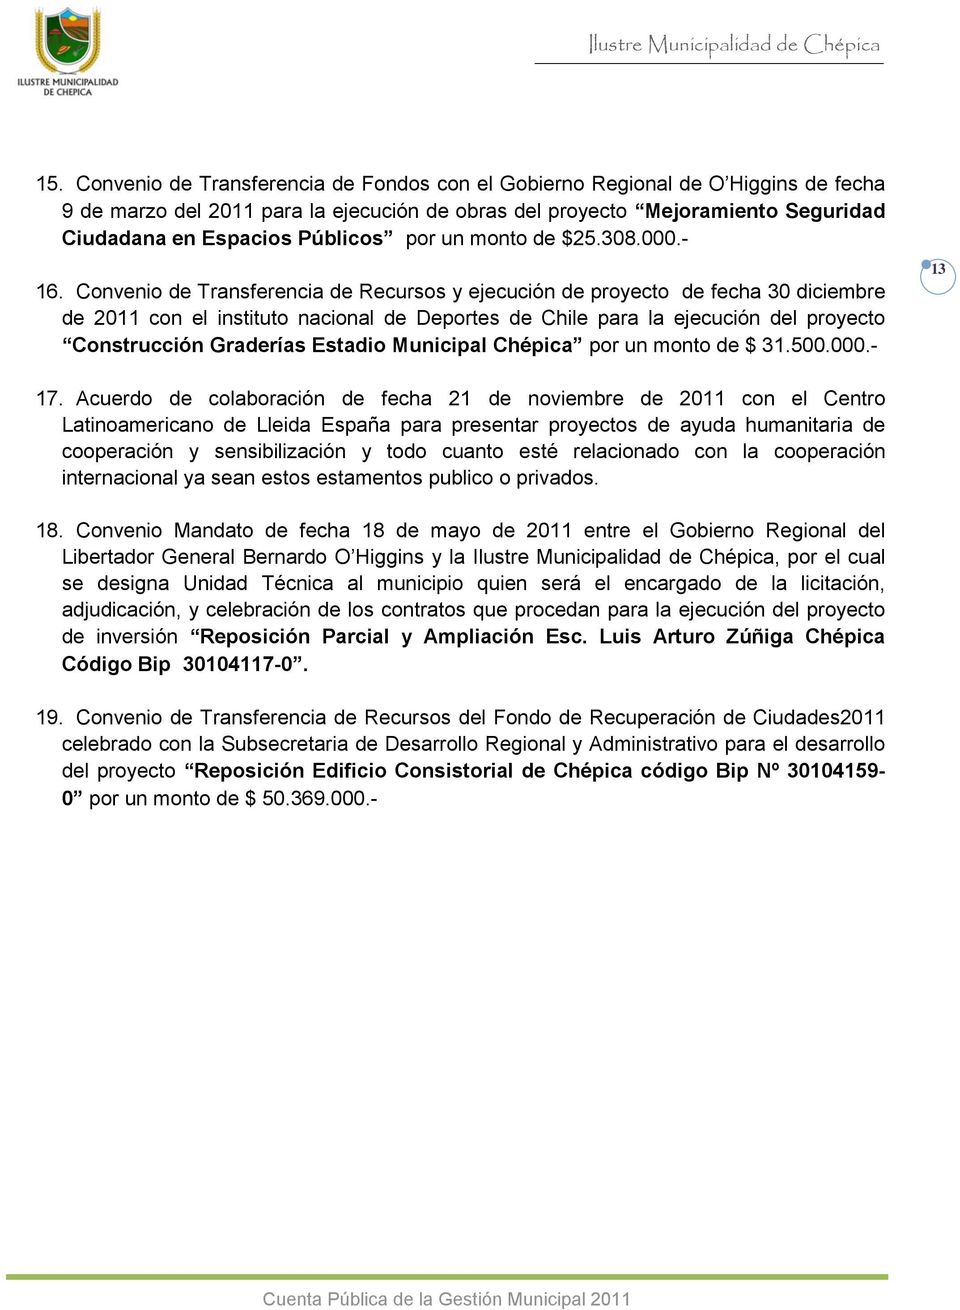 Convenio de Transferencia de Recursos y ejecución de proyecto de fecha 3 diciembre de 211 con el instituto nacional de Deportes de Chile para la ejecución del proyecto Construcción Graderías Estadio